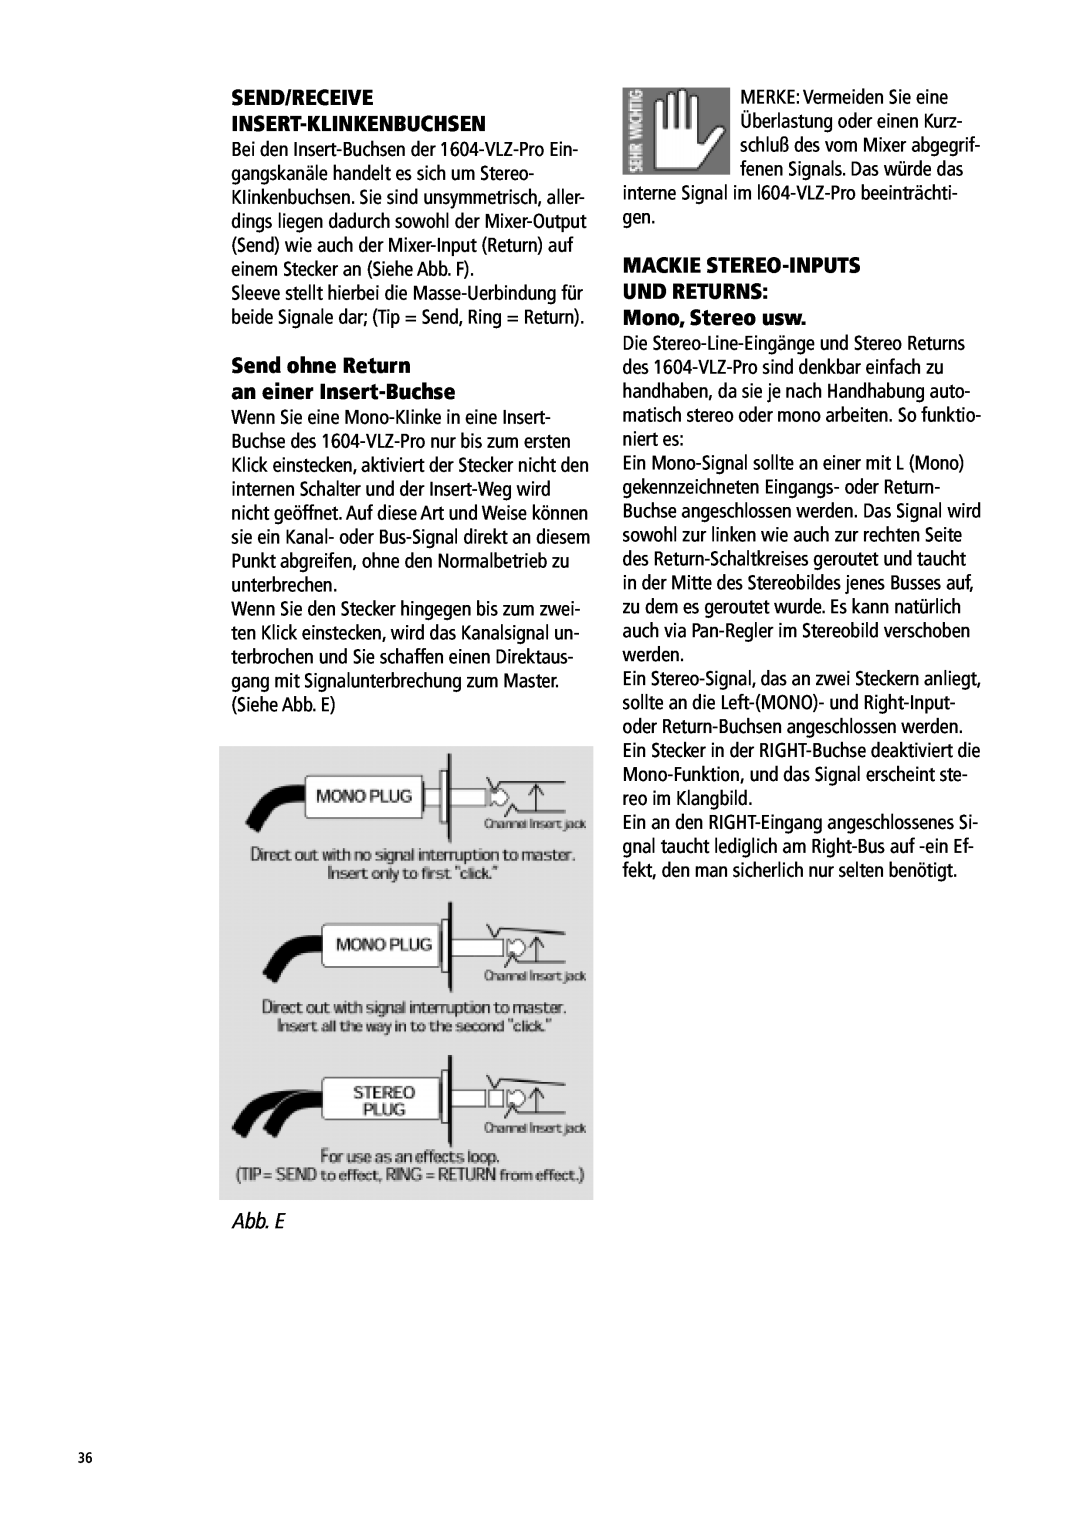 Mackie 1604-VLZ manual Send/Receive Insert-Klinkenbuchsen, Send ohne Return an einer Insert-Buchse, Siehe Abb. E 